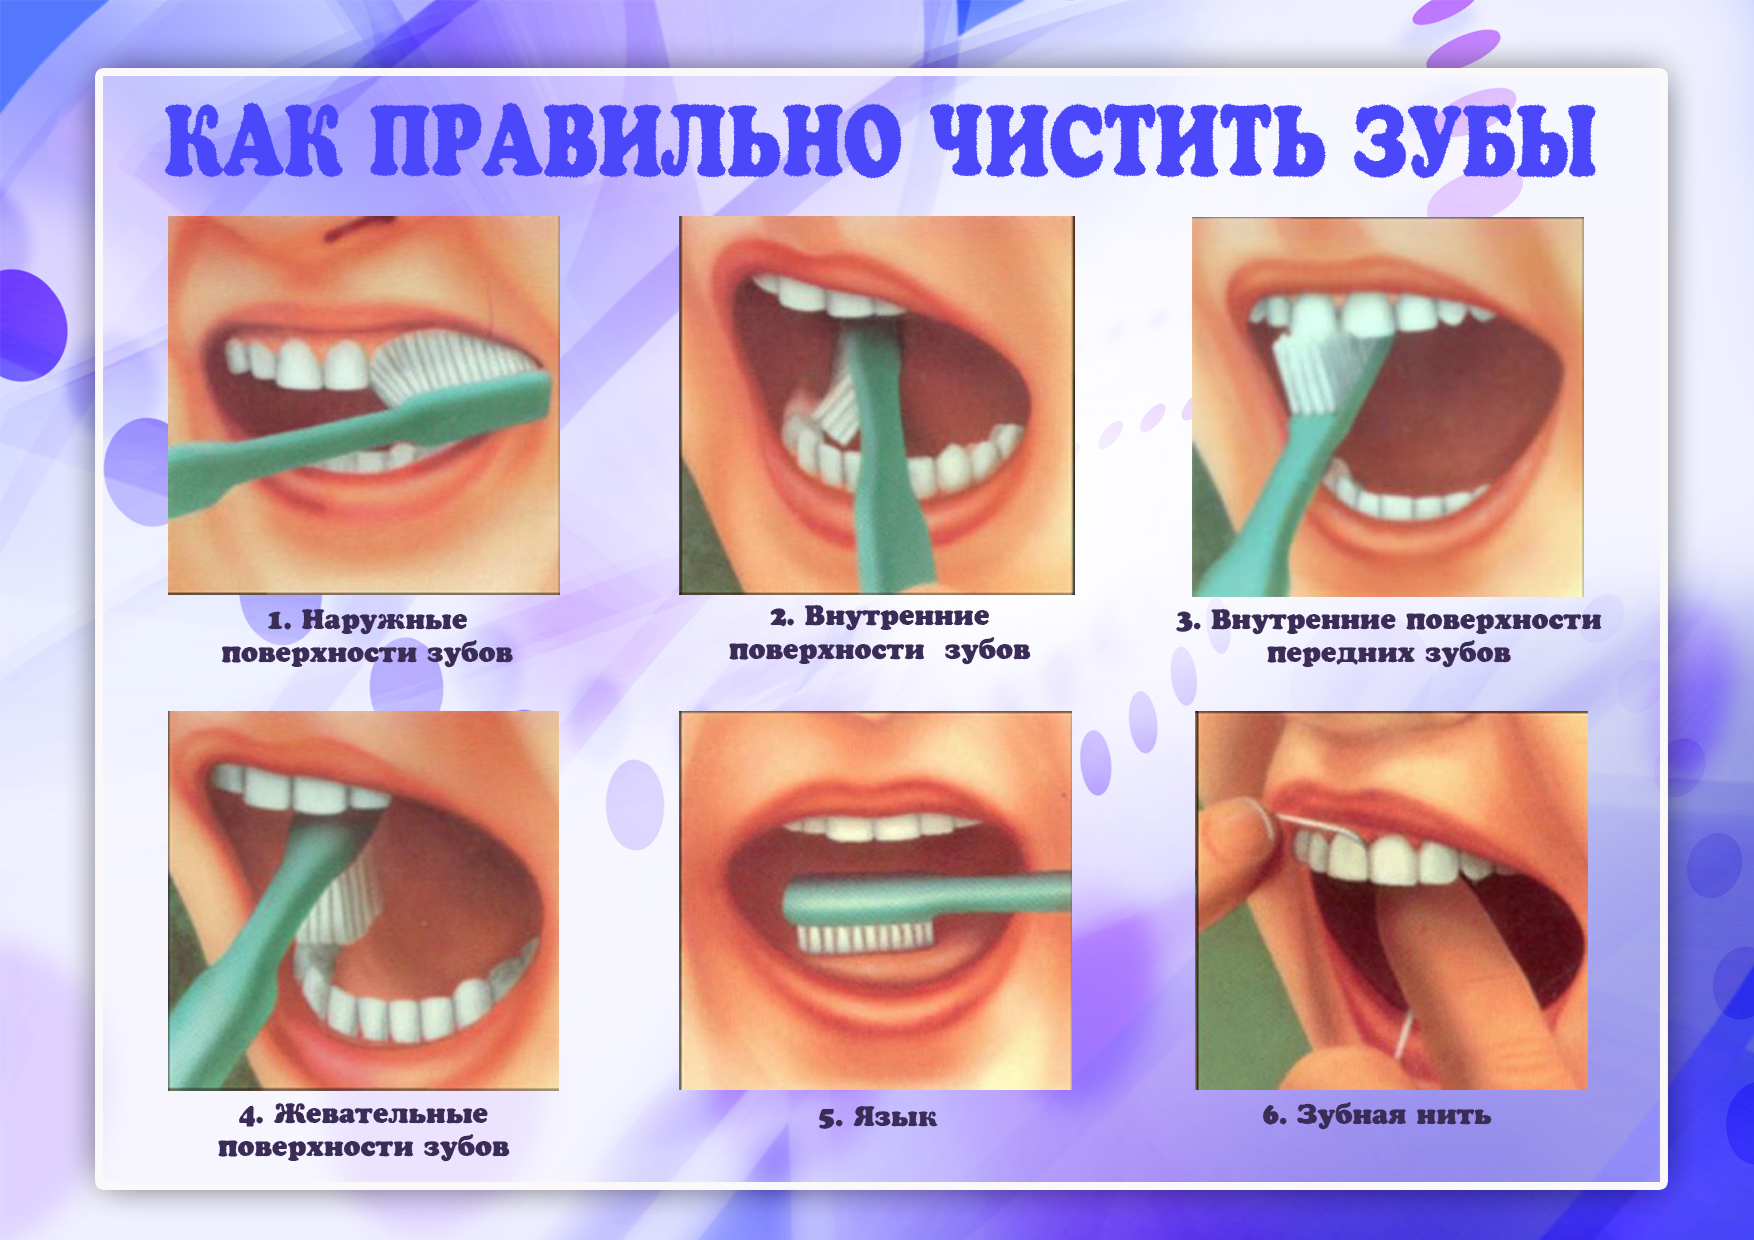 Чистка зубов вредно. Как правильно чистить зубы. КВК правильно чистить зубы. Как правиночиститт зубы. Алгоритм чистки зубов.